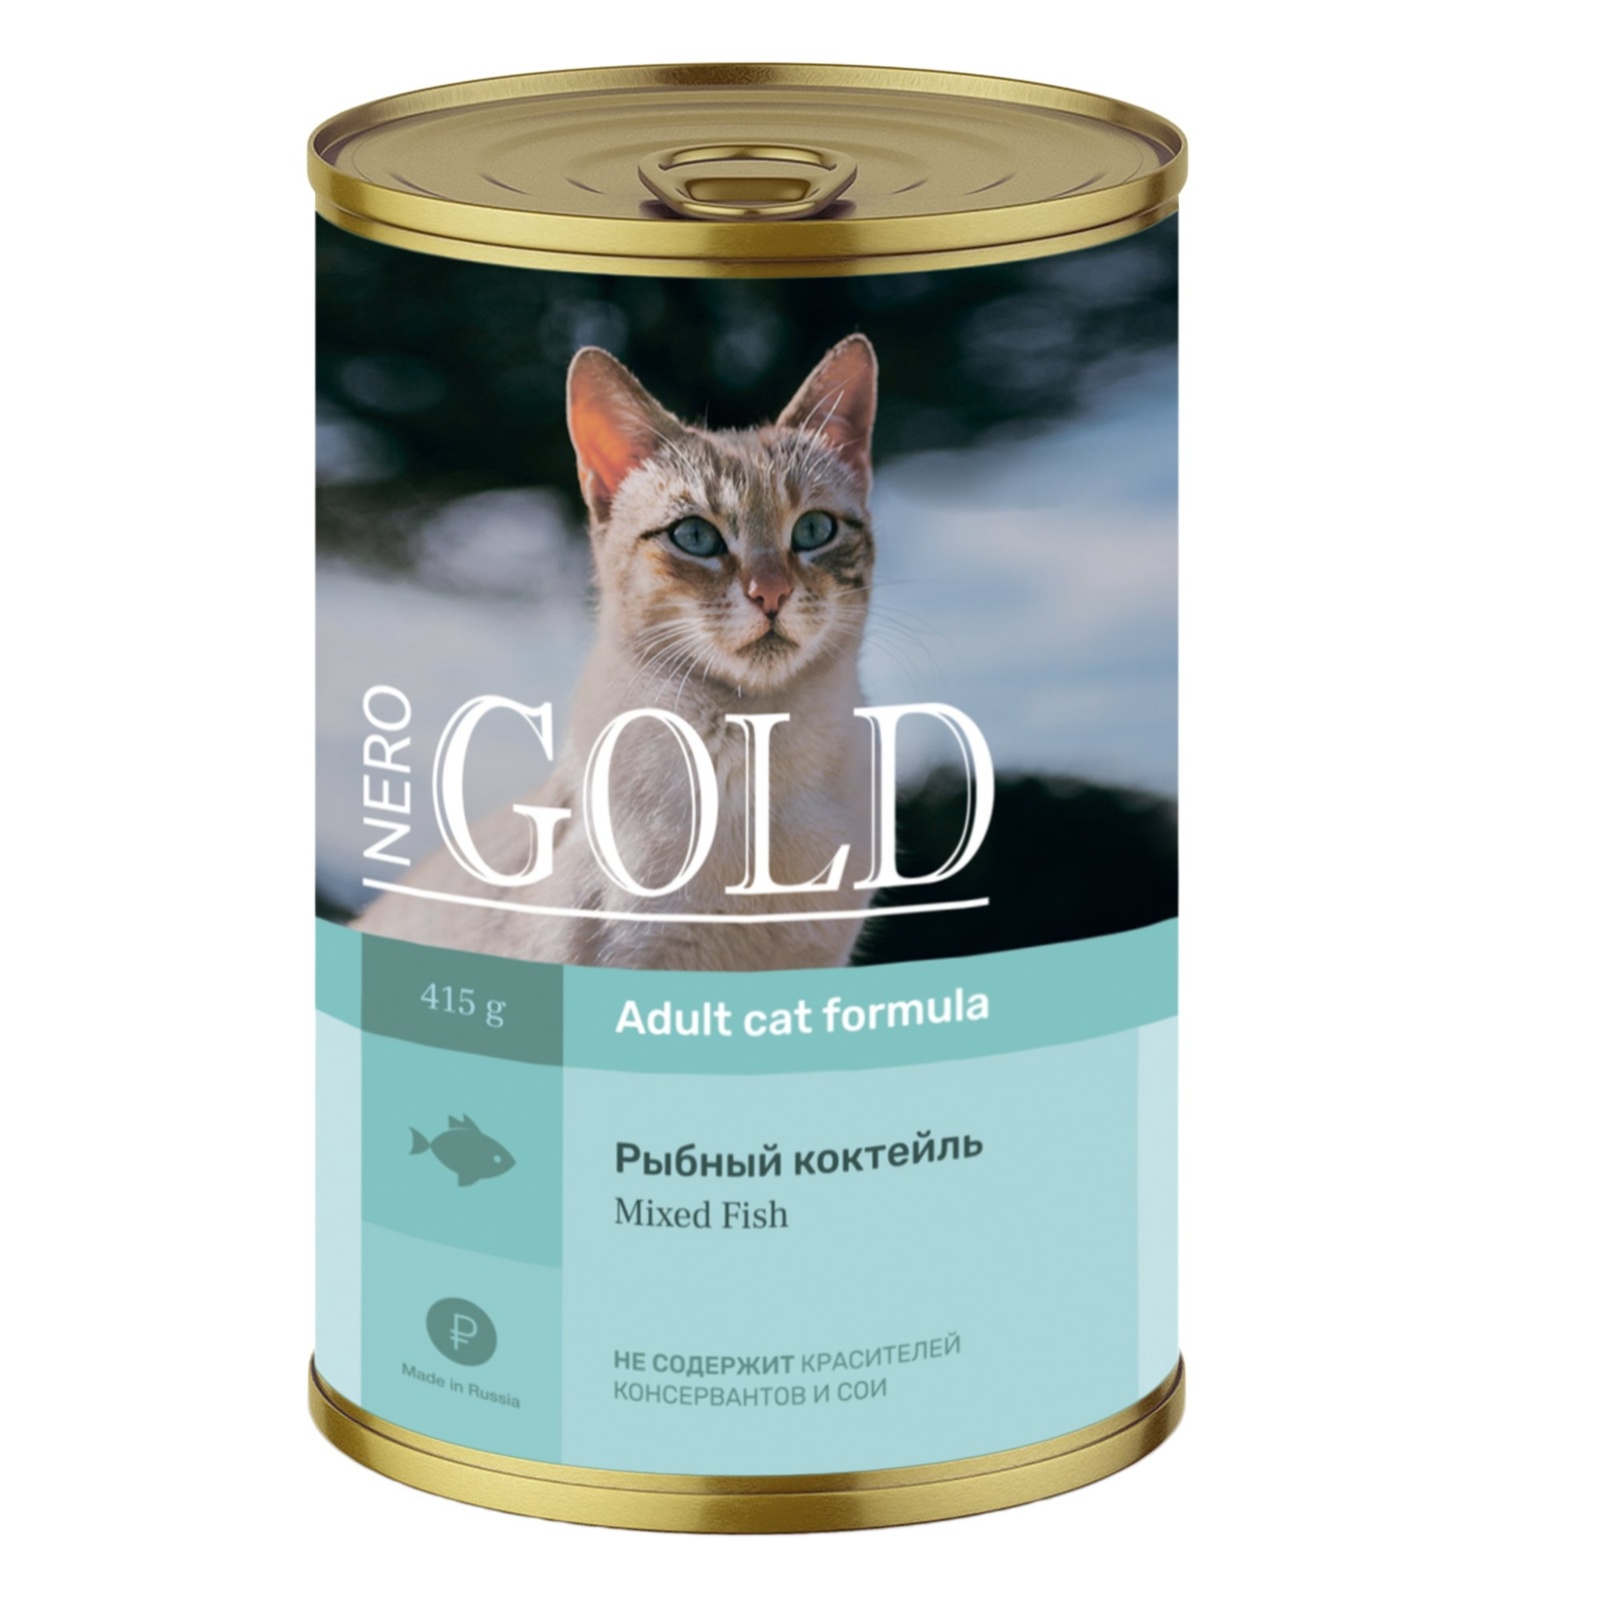 Nero Gold консервы Nero Gold консервы кусочки в желе для кошек Рыбный коктейль (415 г)